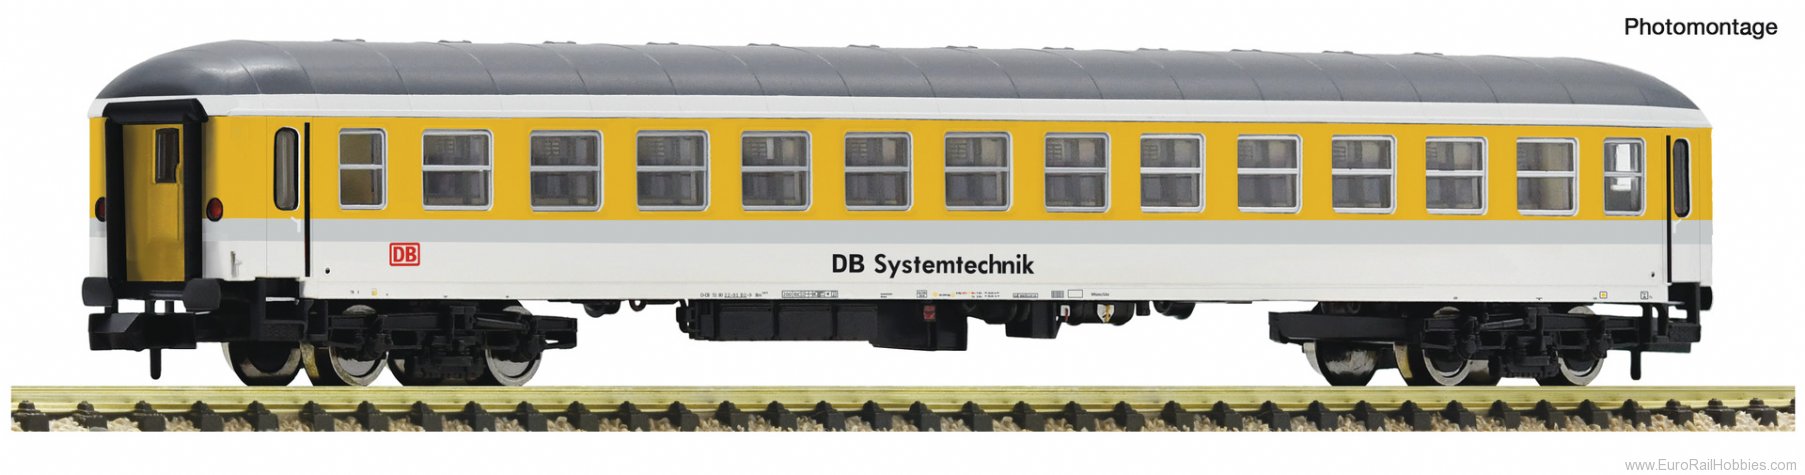 Fleischmann 6260032 Measuring train coach, DB Netz